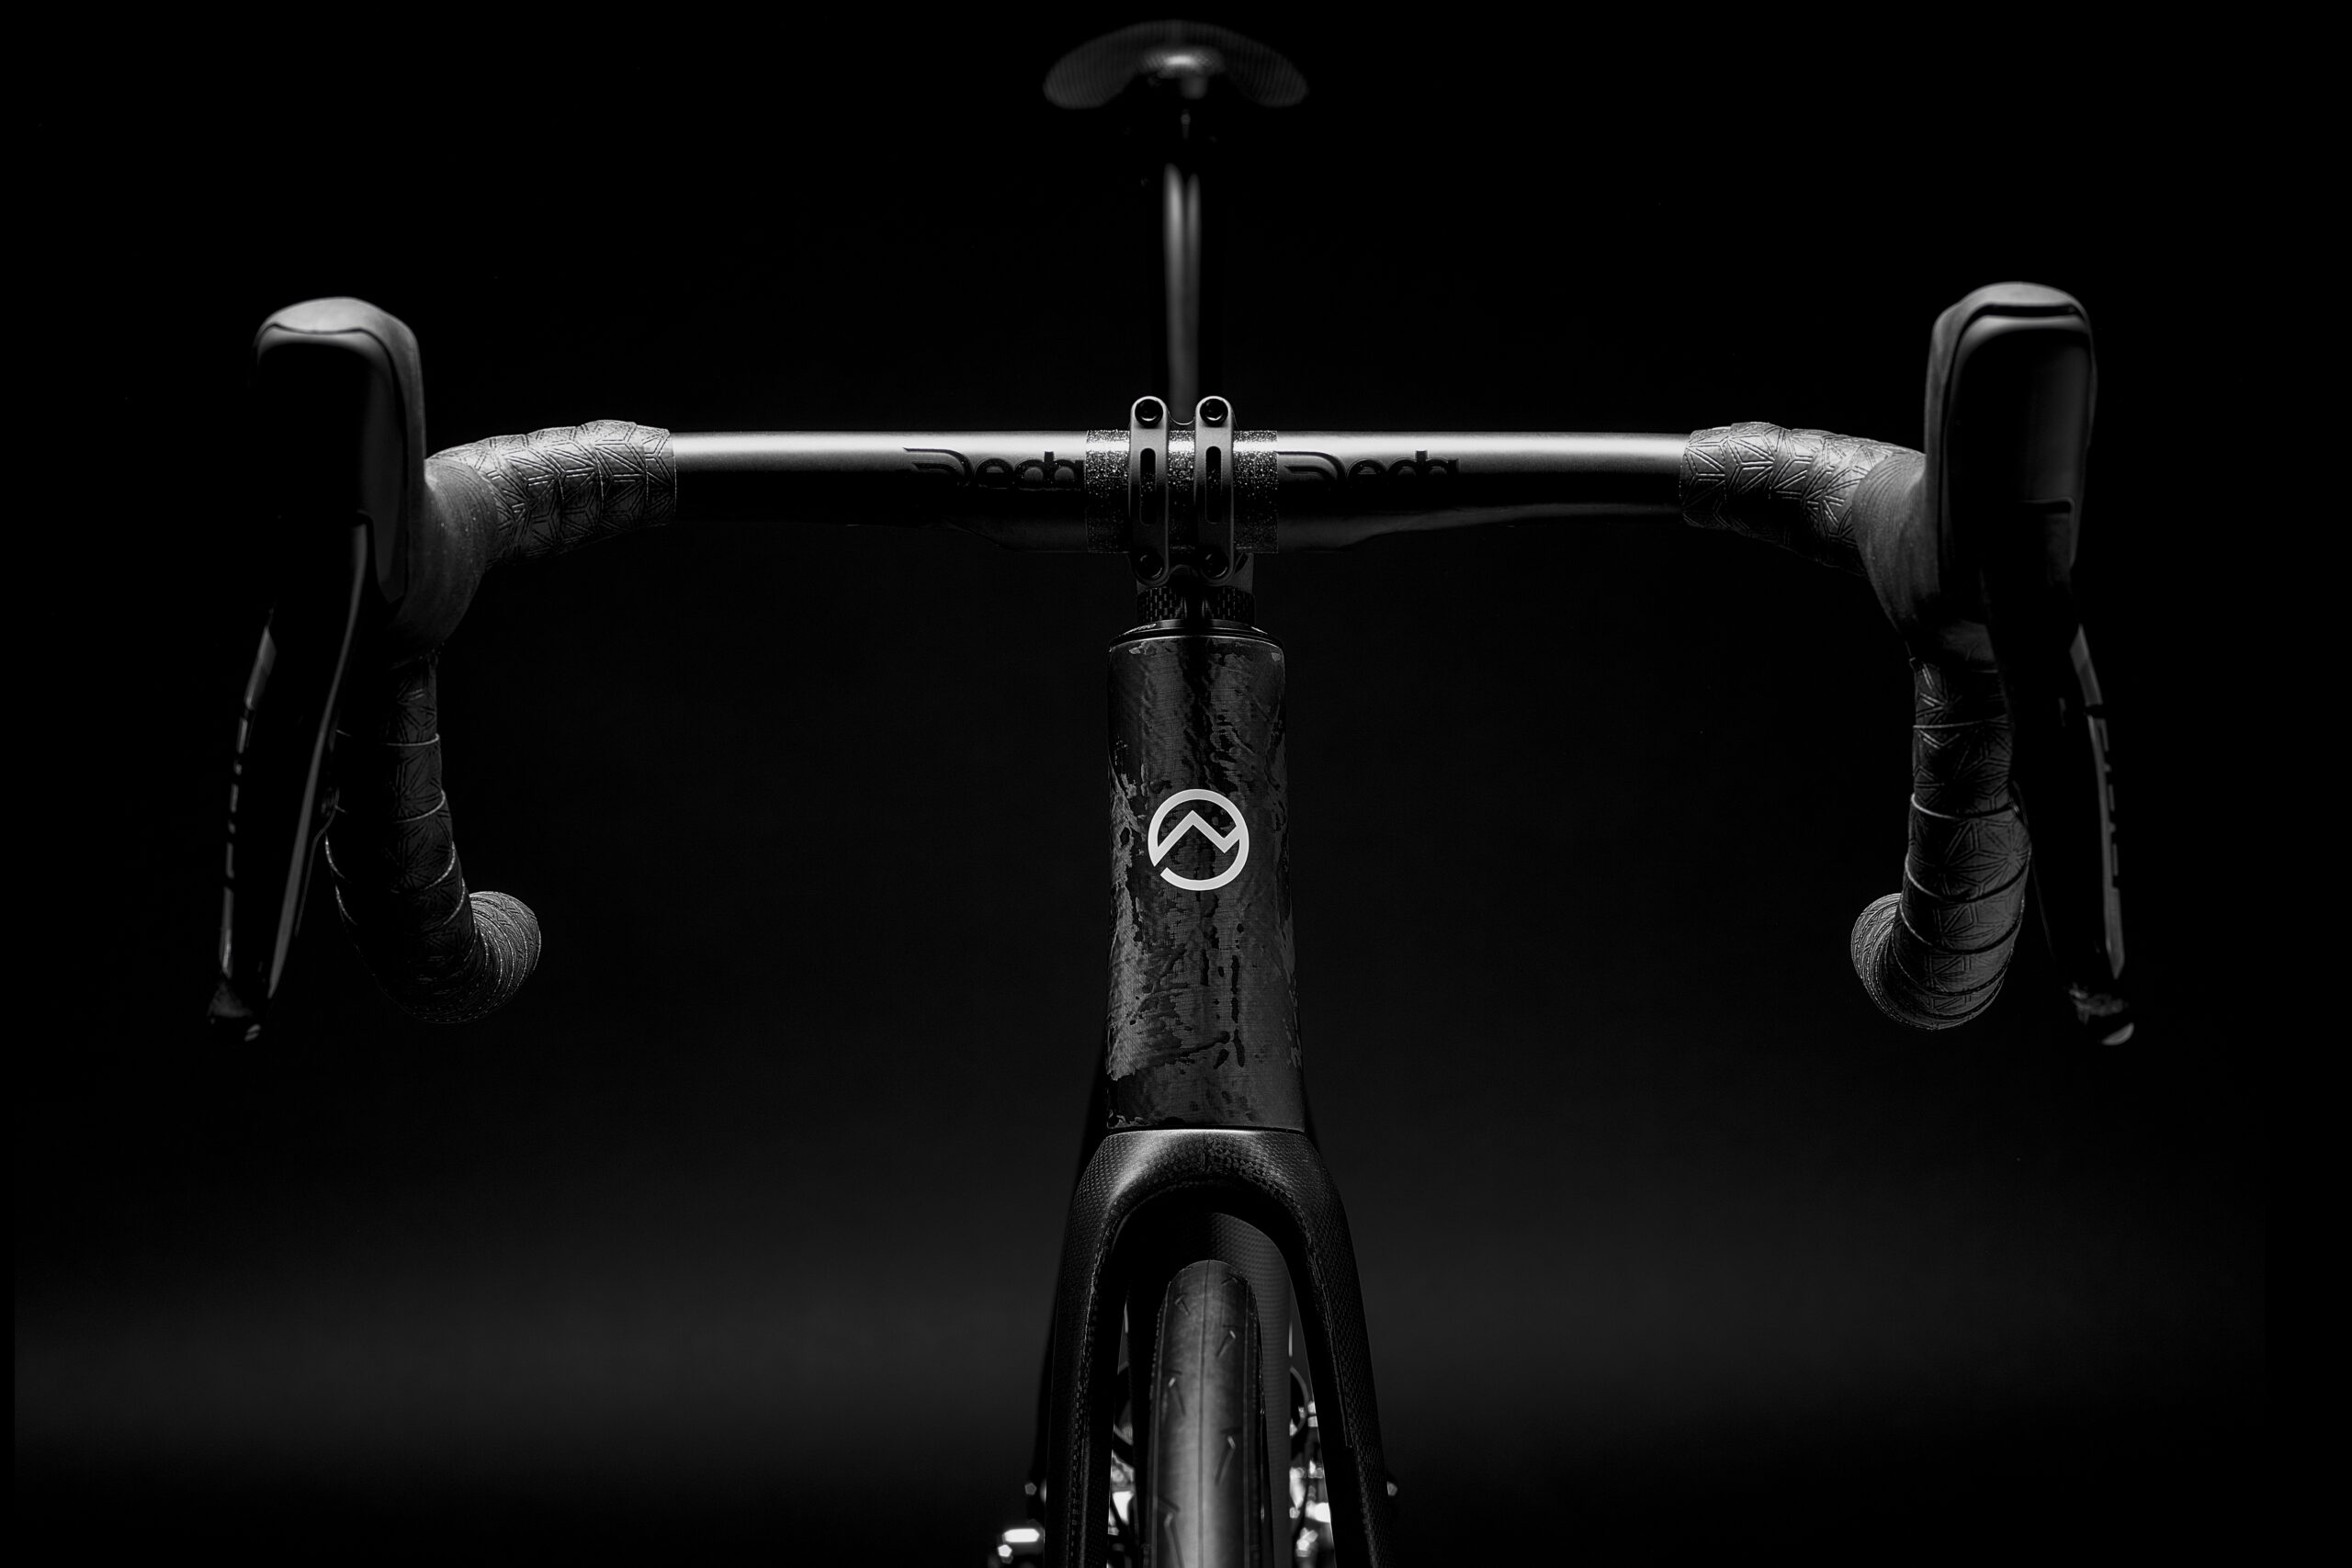 Bicicletta Officine Mattio modello SL DISC, produzione made in italy in fibra di carbonio fotografia dettaglio manubrio fibra di carbonio